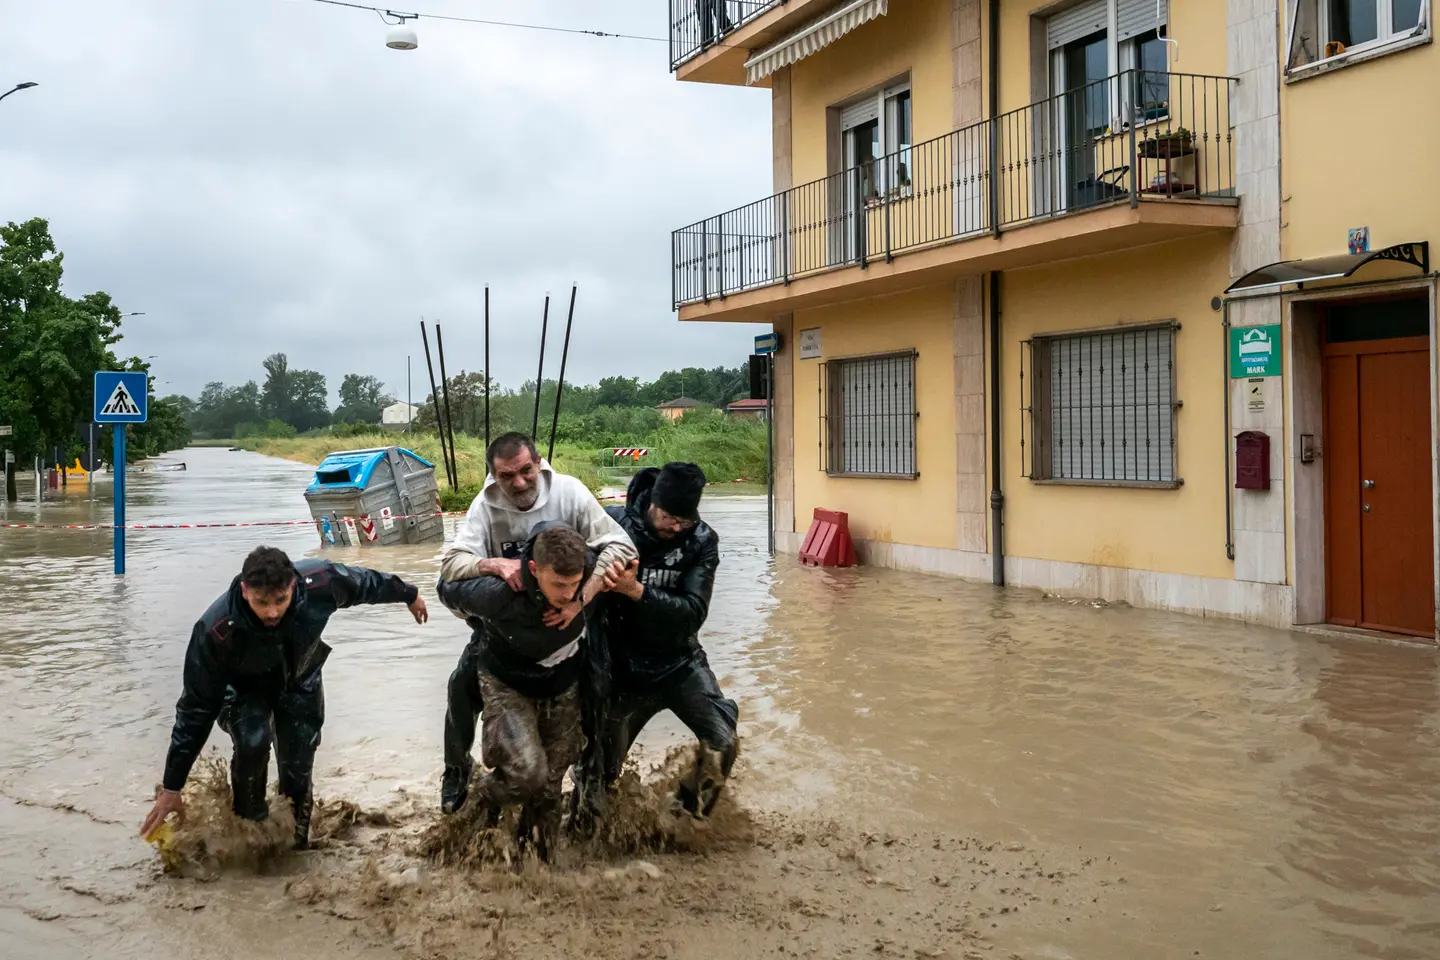 Alluvione a Faenza, il salvataggio di tre persone da parte dei carabinieri